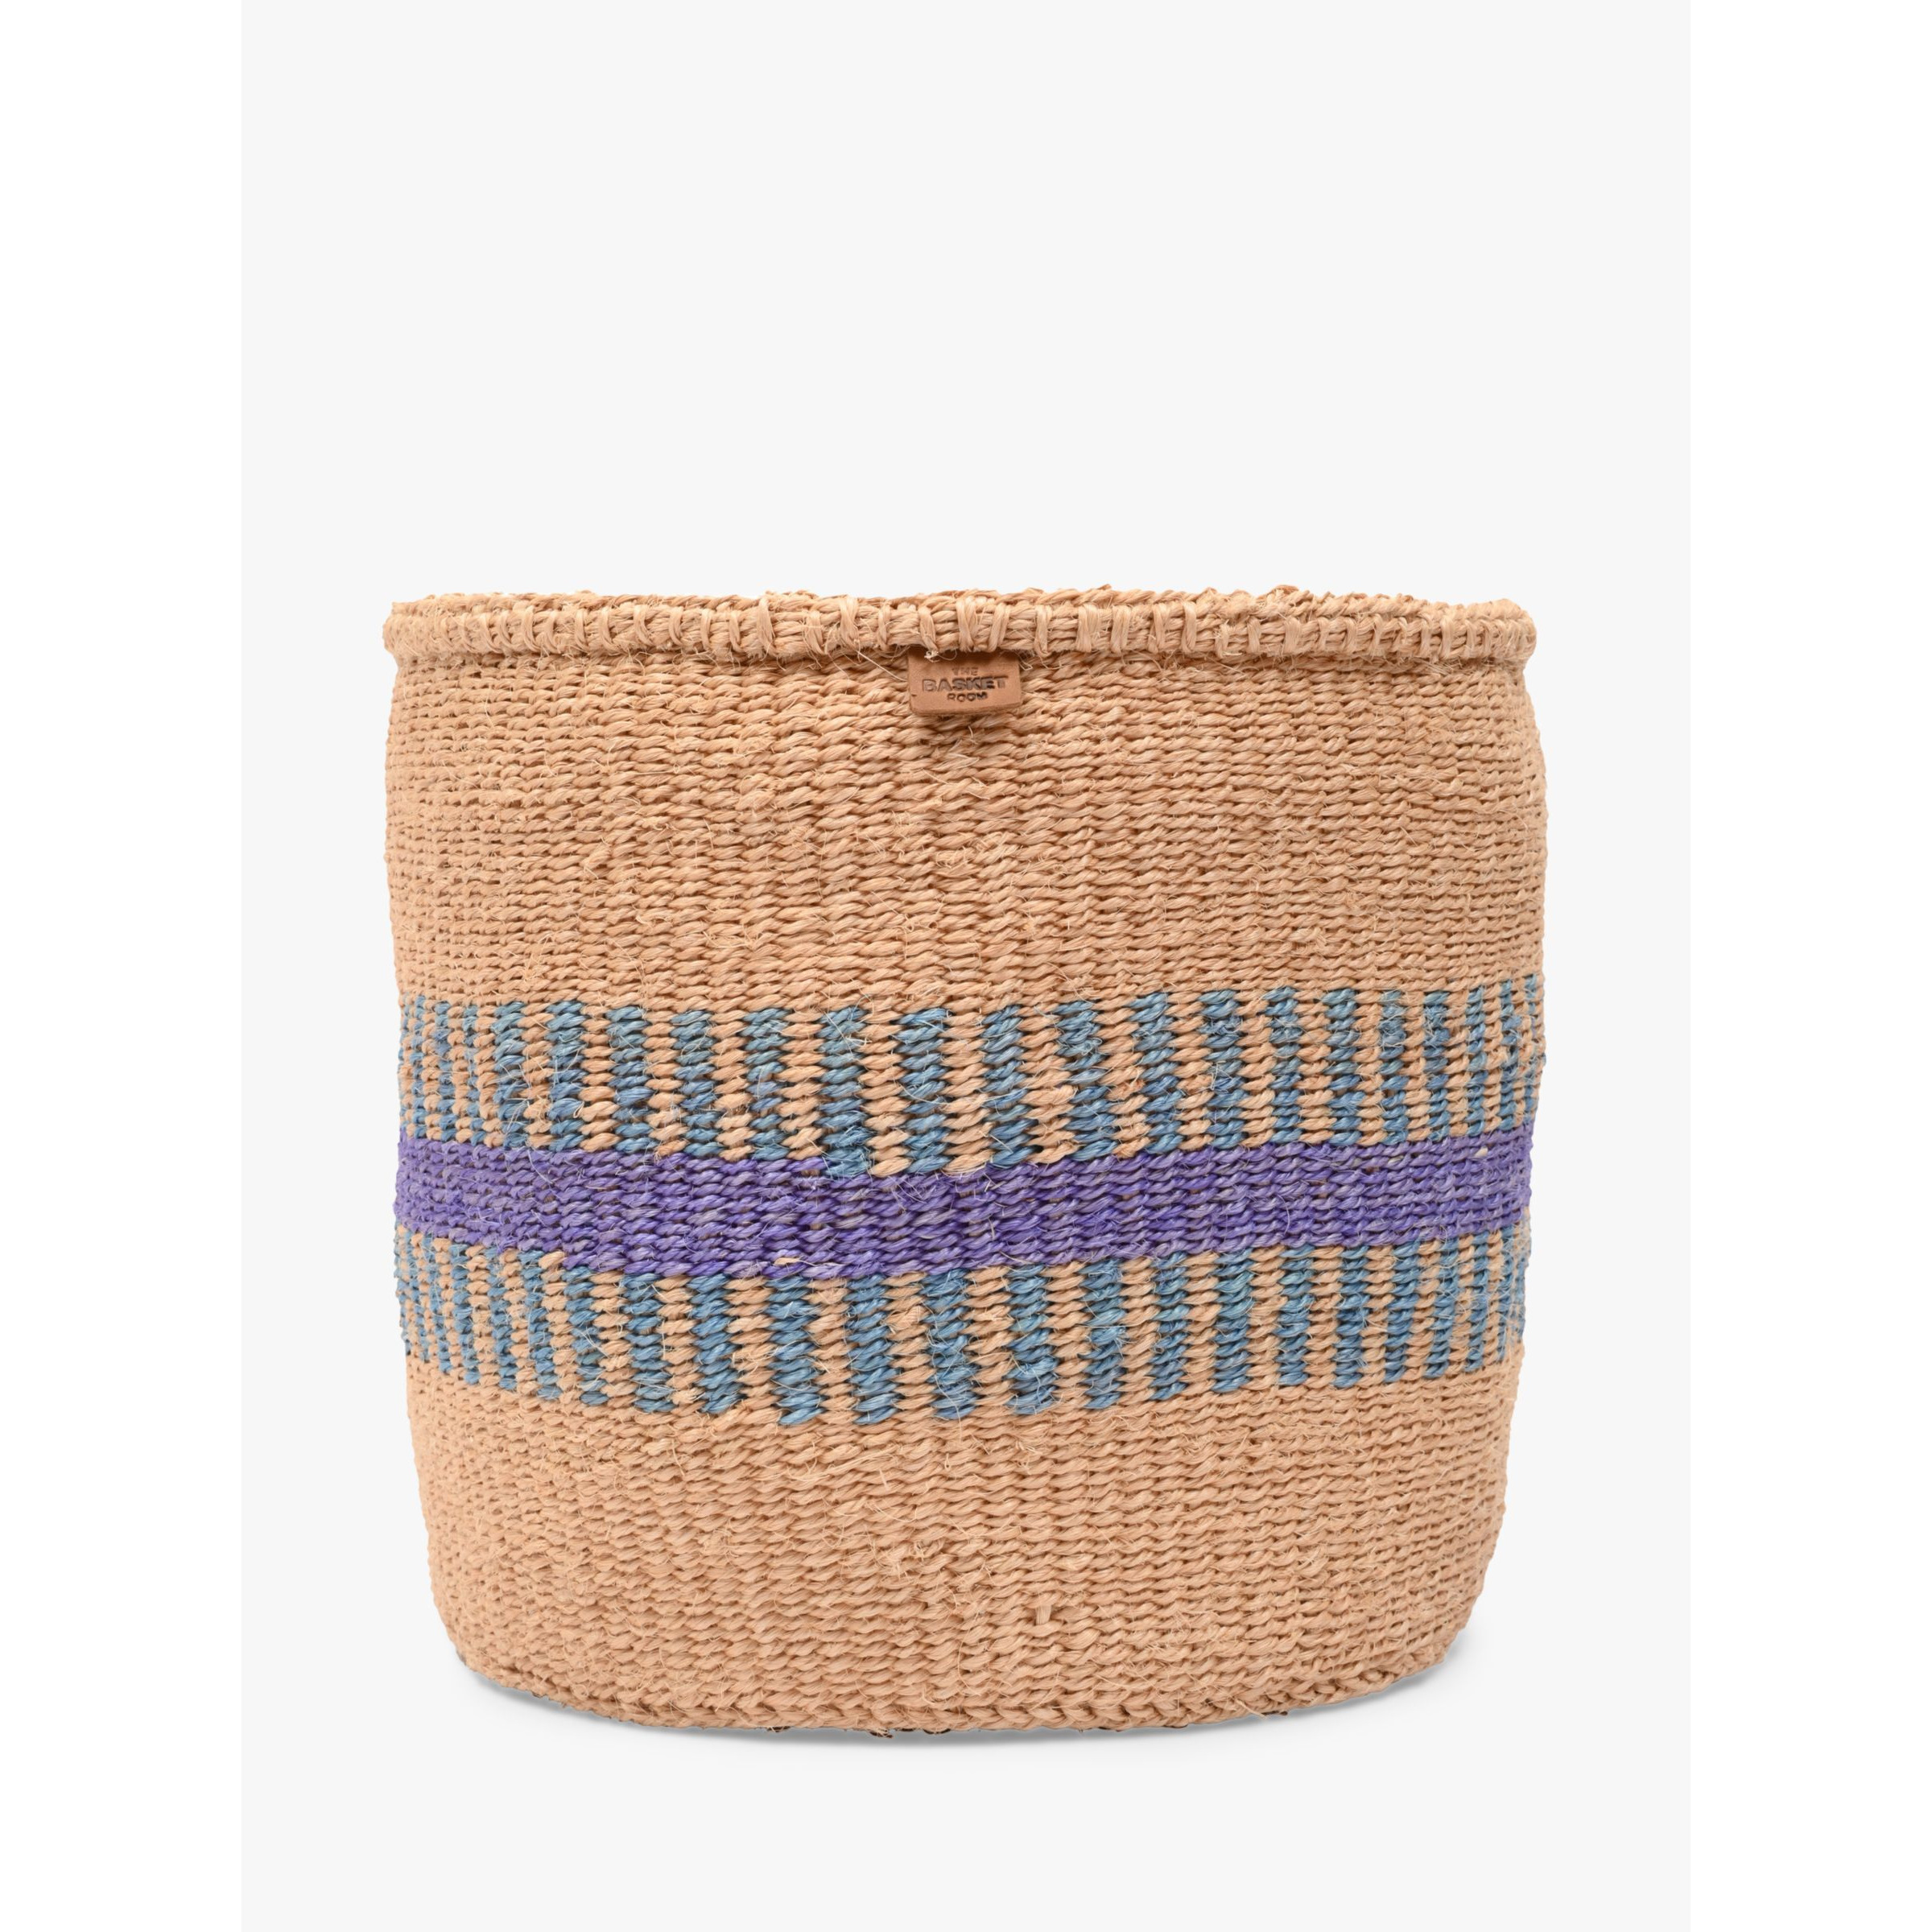 The Basket Room Huduma Woven Storage Basket, Natural/Lavender, Large - image 1